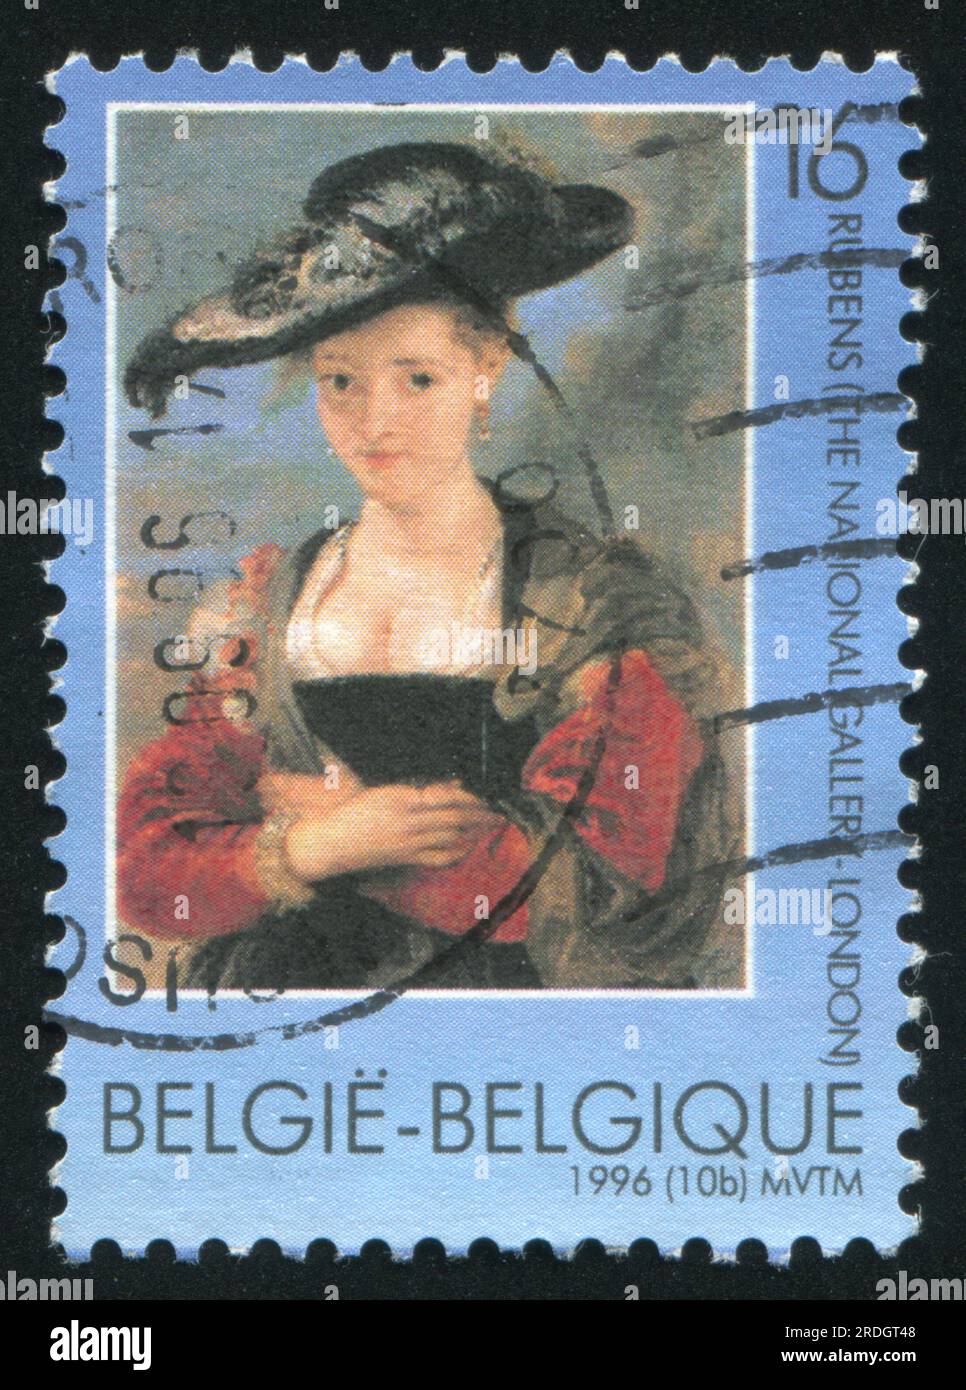 RUSSIE KALININGRAD, 26 OCTOBRE 2015 : timbre imprimé par la Belgique, montrant Susanna Fourment, de Peter Paul Rubens, vers 1996 Banque D'Images